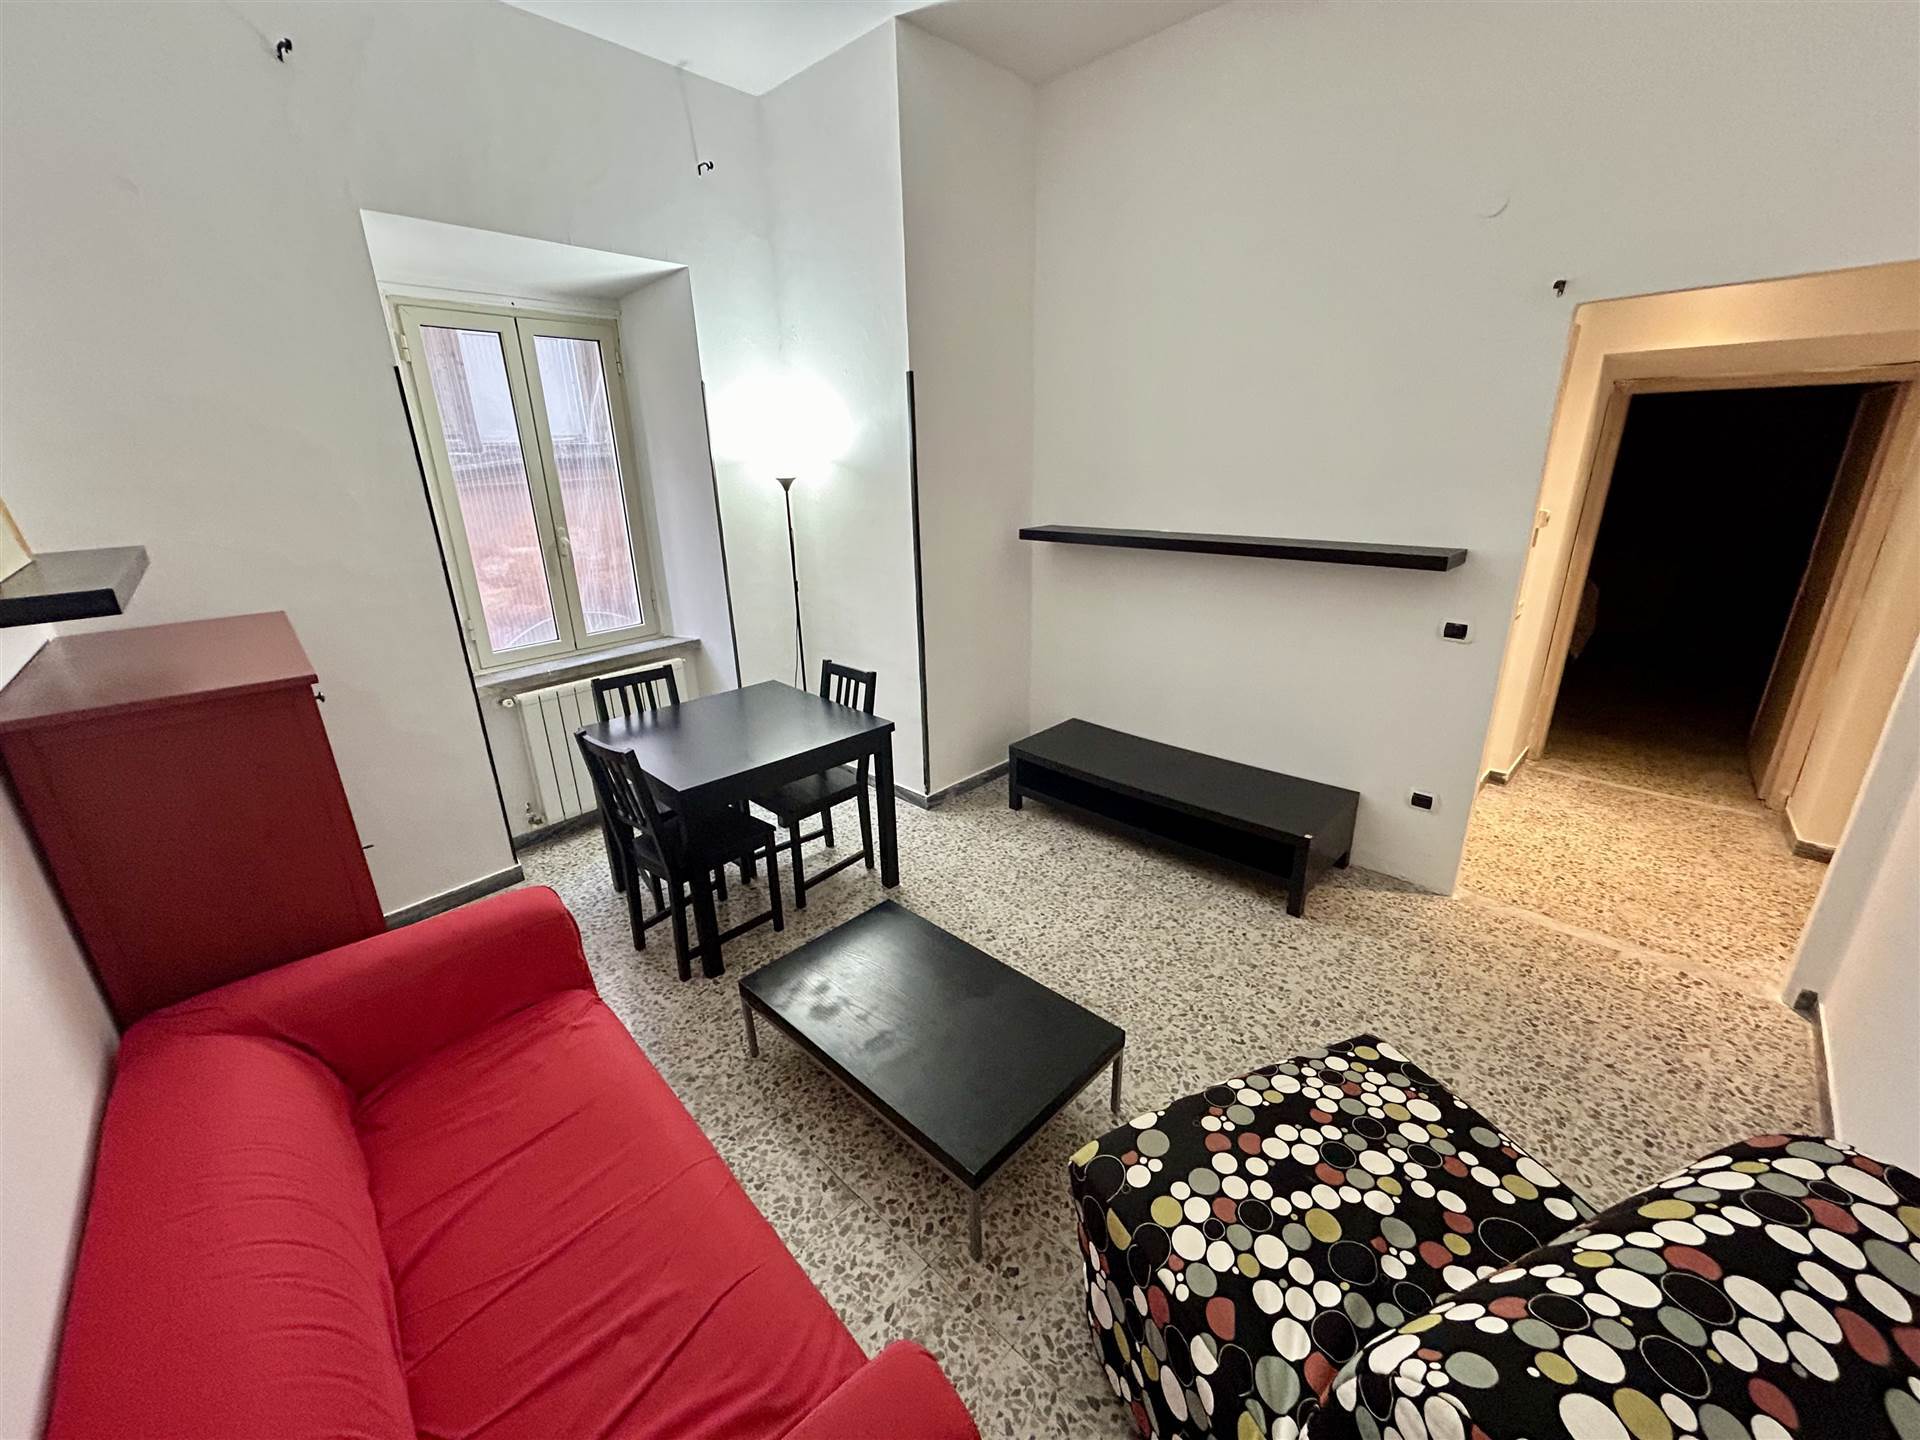 Appartamento in affitto a Tuscania, 4 locali, prezzo € 450 | PortaleAgenzieImmobiliari.it